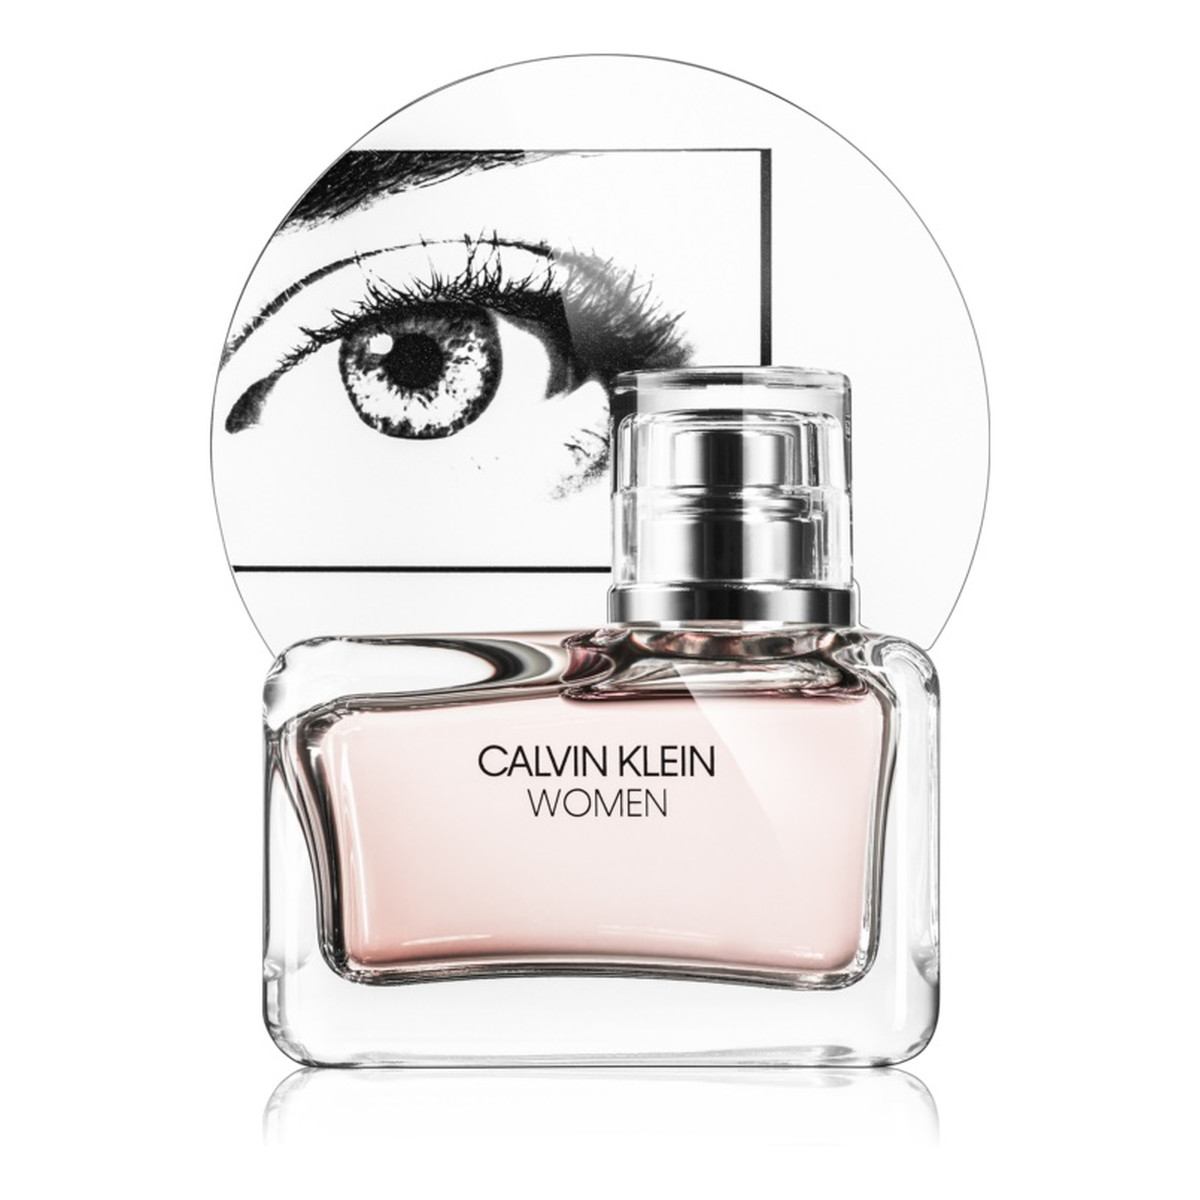 Calvin Klein Women Woda perfumowana 50ml